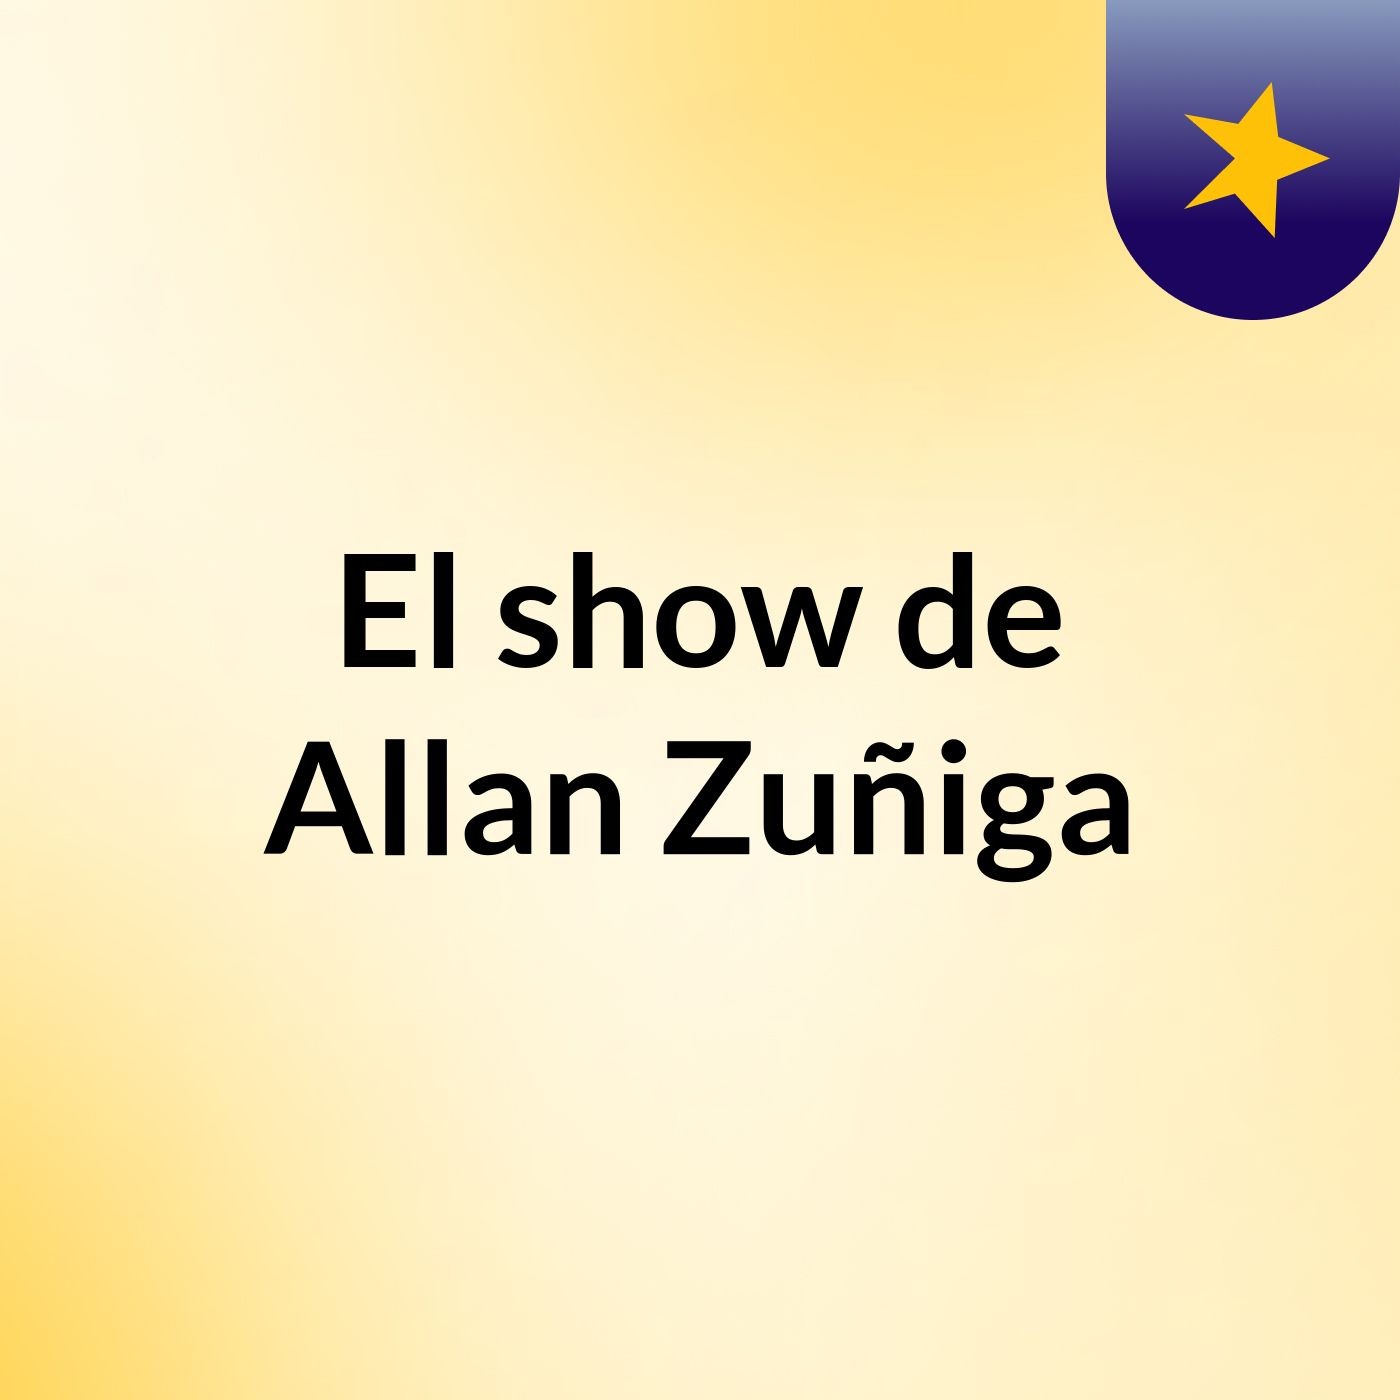 Episodio 2 - El show de Allan Zuñiga